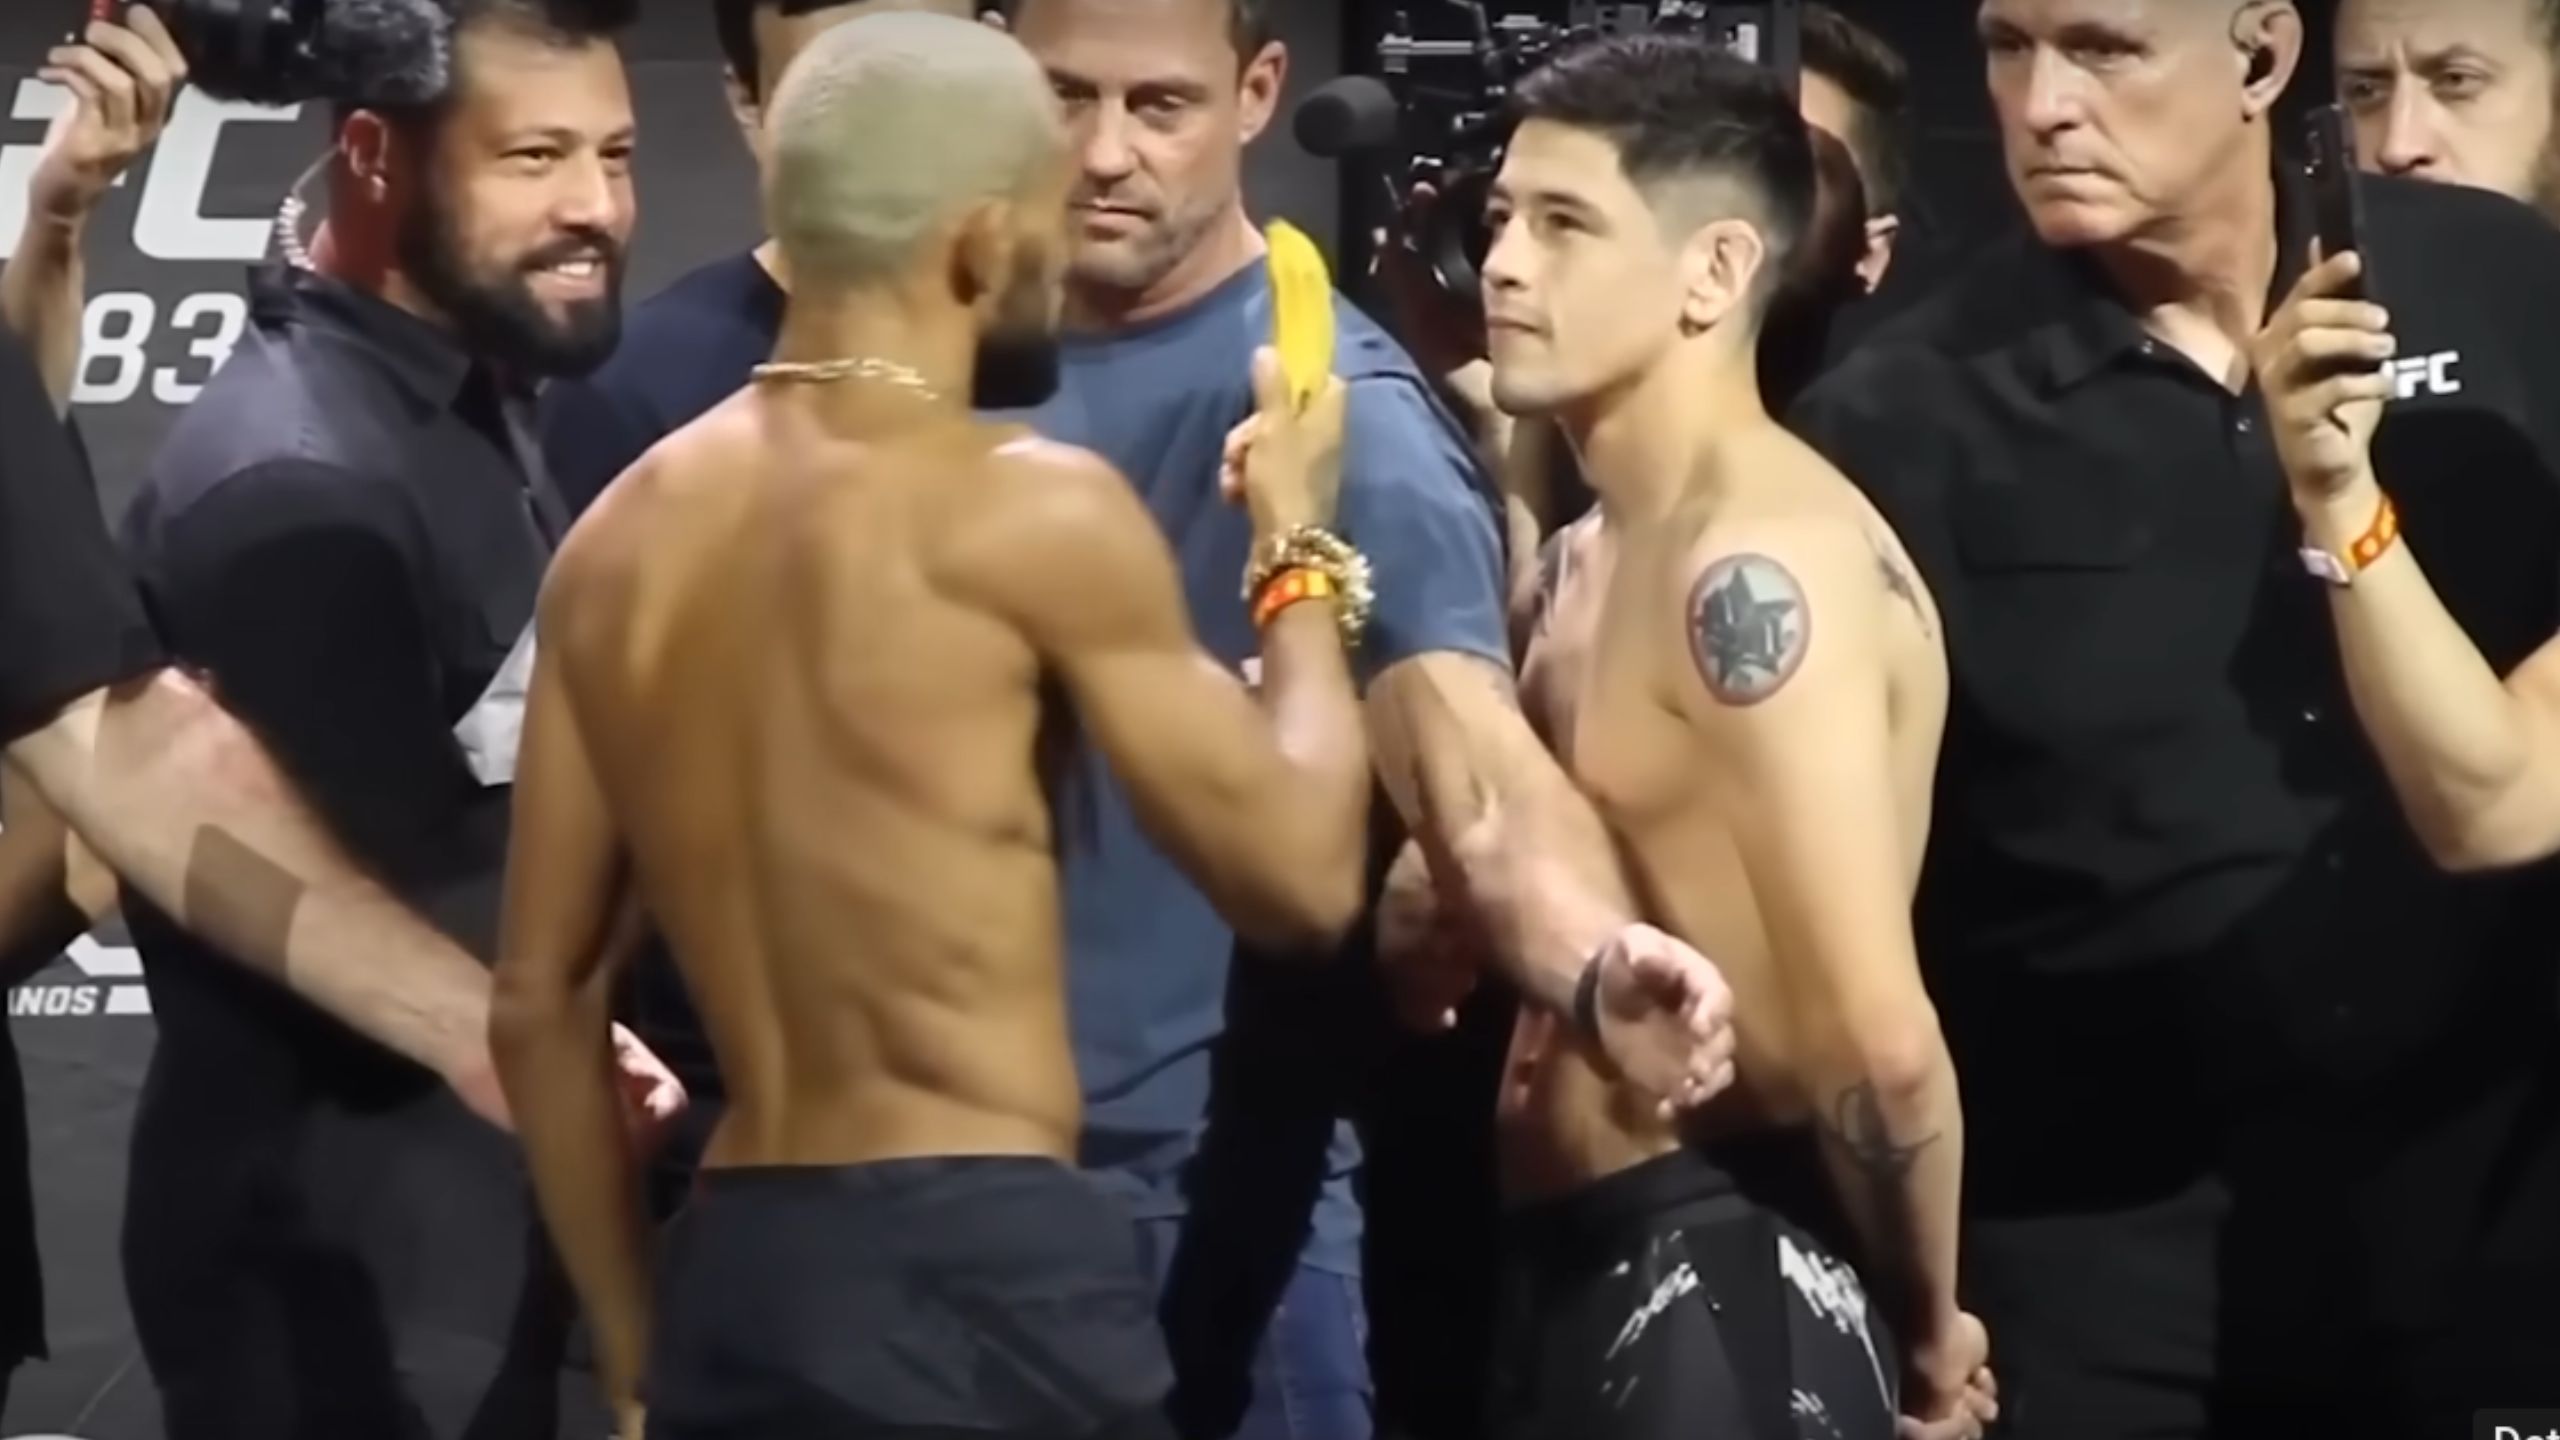 Deiveson ‘apimenta’ duelo com Moreno no UFC 283 e relembra ato de racismo; confira